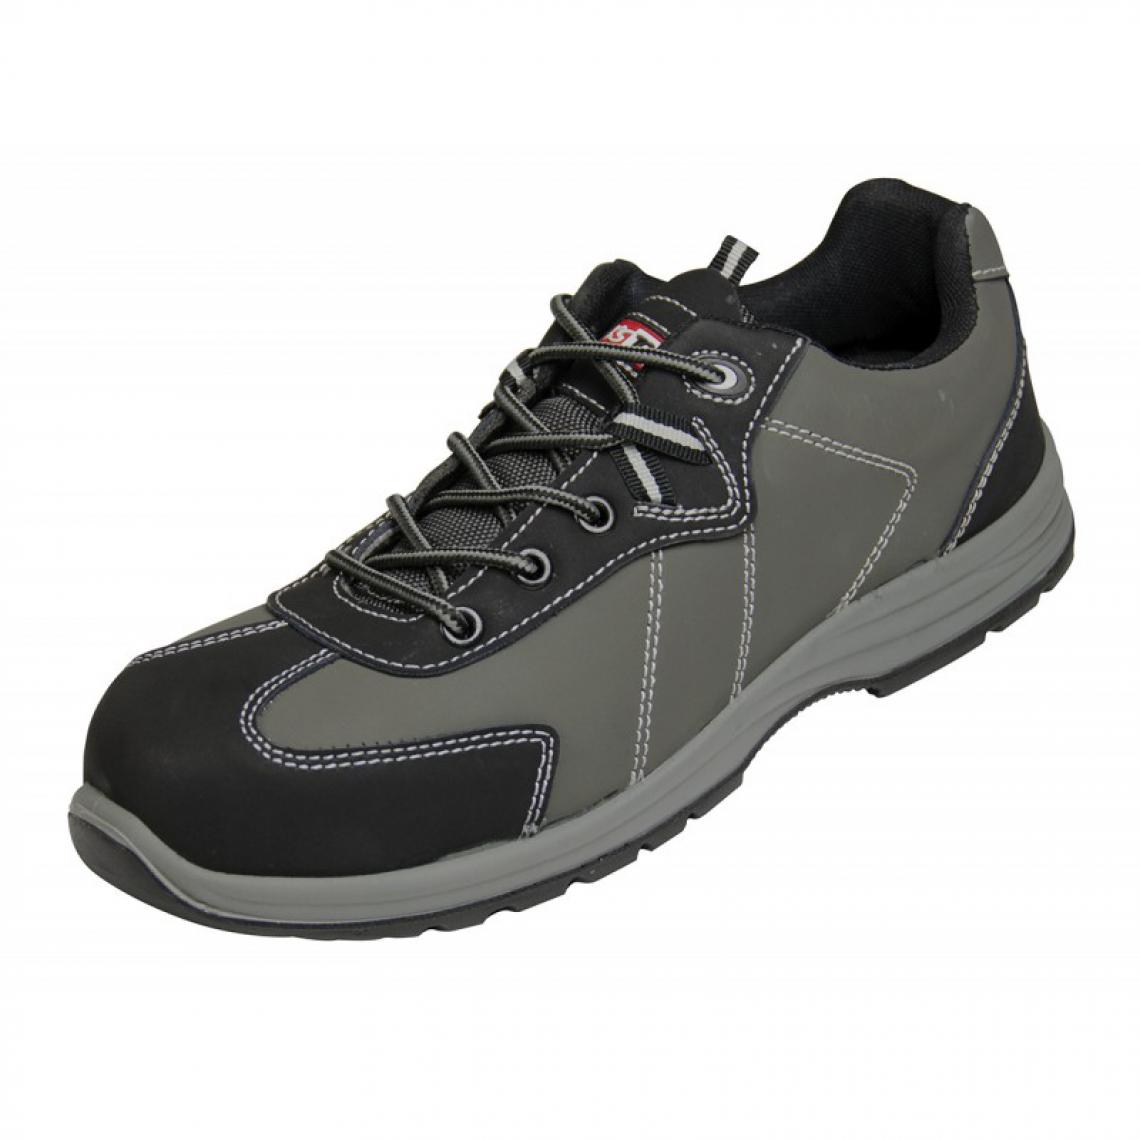 Kstools - Chaussures de sécurité KSTOOLS Couleur grise taille 39 - Equipement de Protection Individuelle